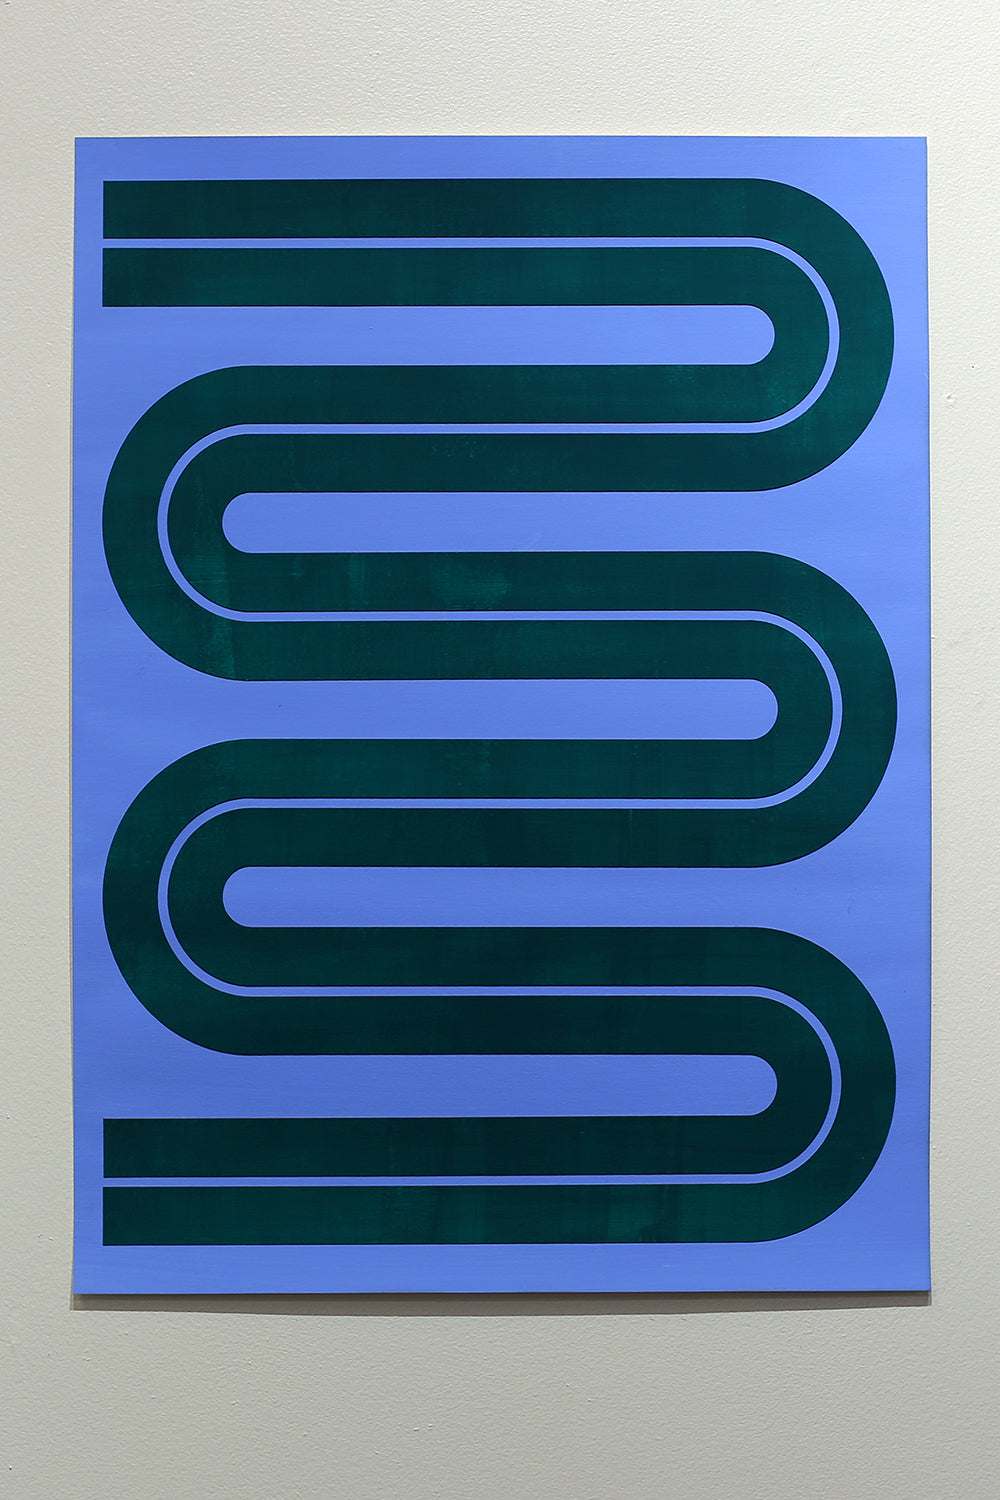 Elspeth Schulze, "Meander Line (Emerald + Blue)"